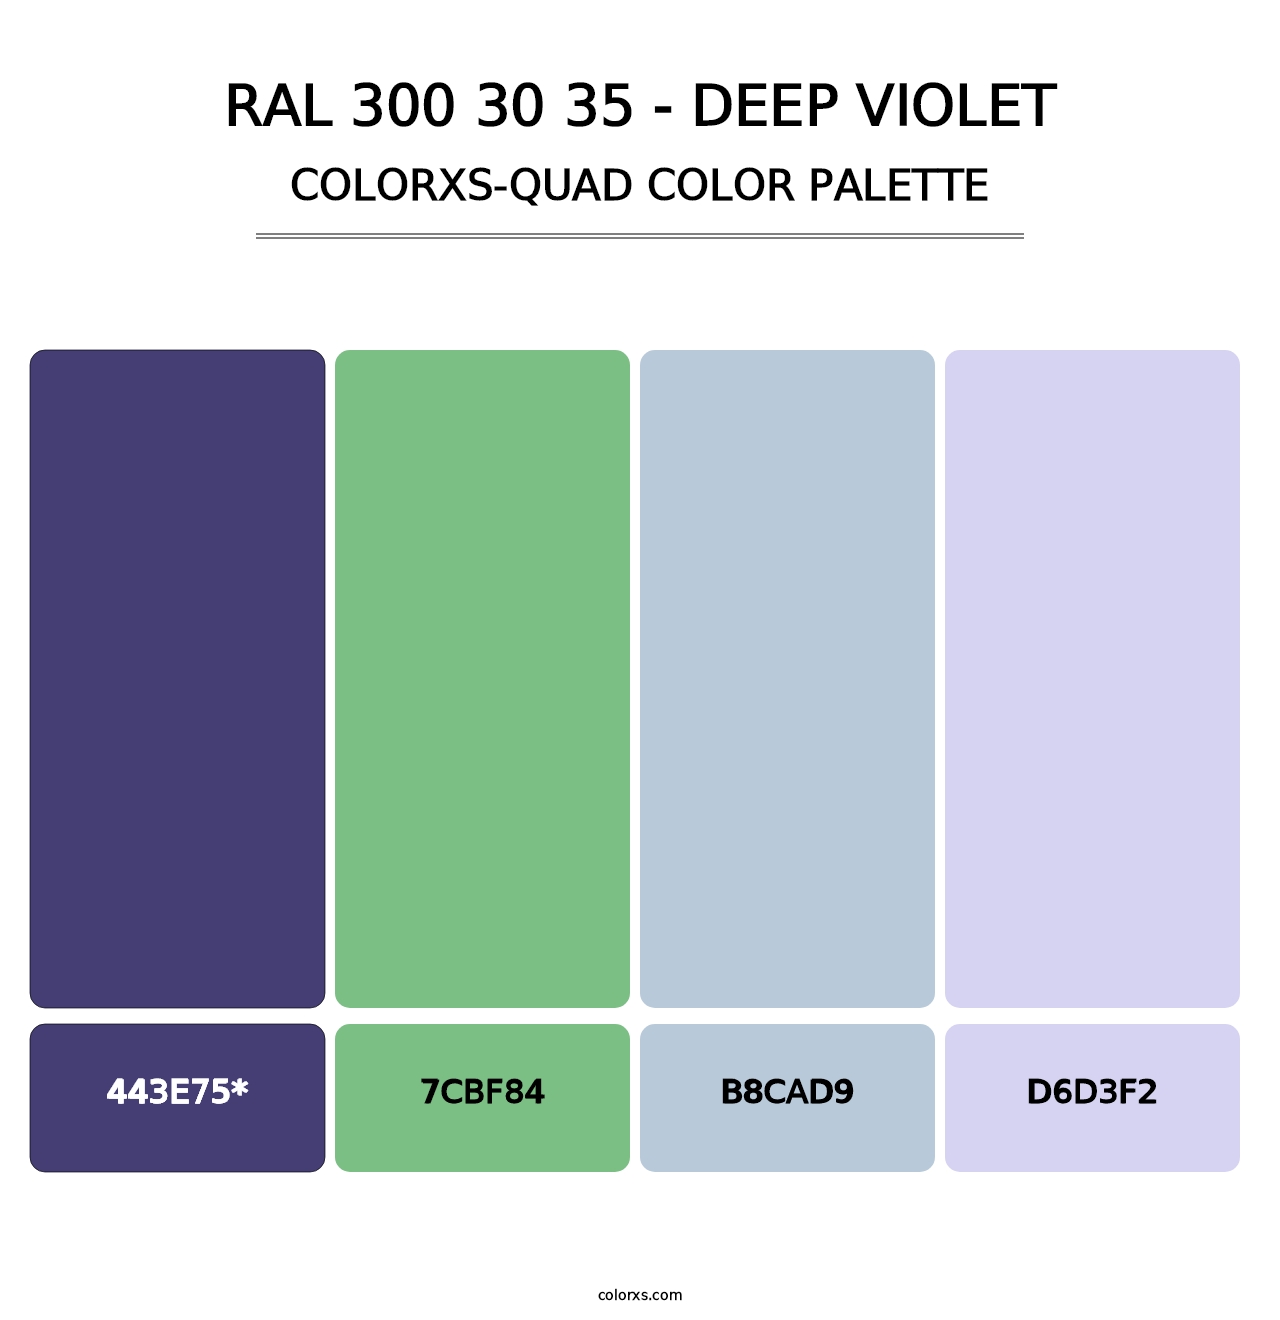 RAL 300 30 35 - Deep Violet - Colorxs Quad Palette